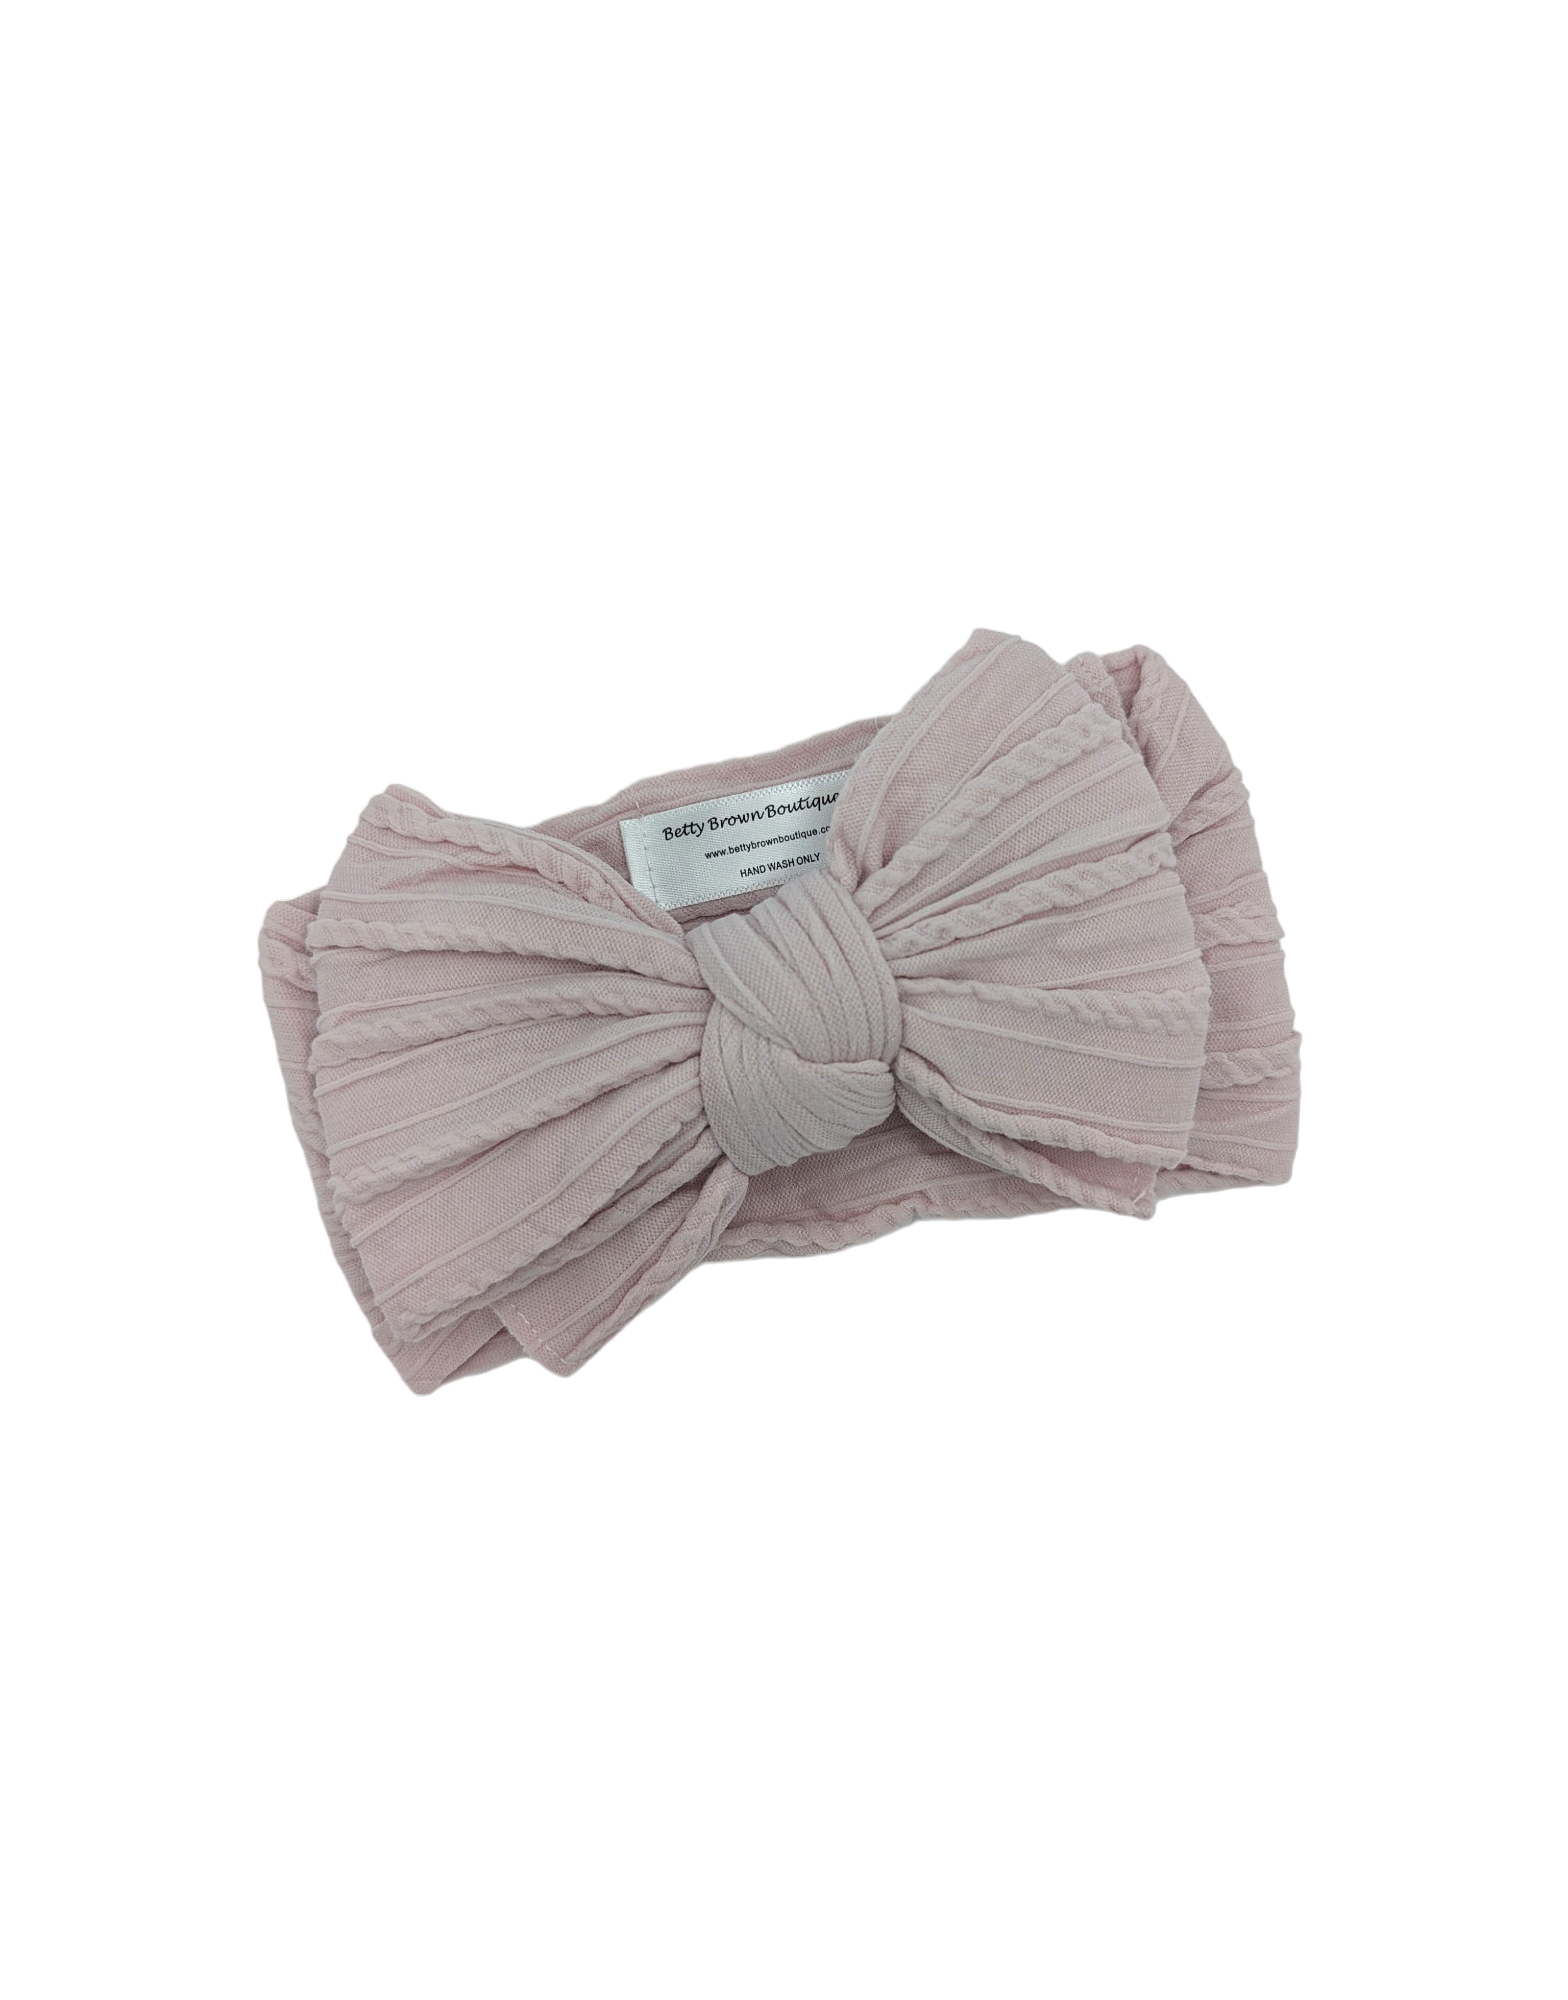 Pale Mauve Larger Bow Cable Knit Headwrap - Betty Brown Boutique Ltd